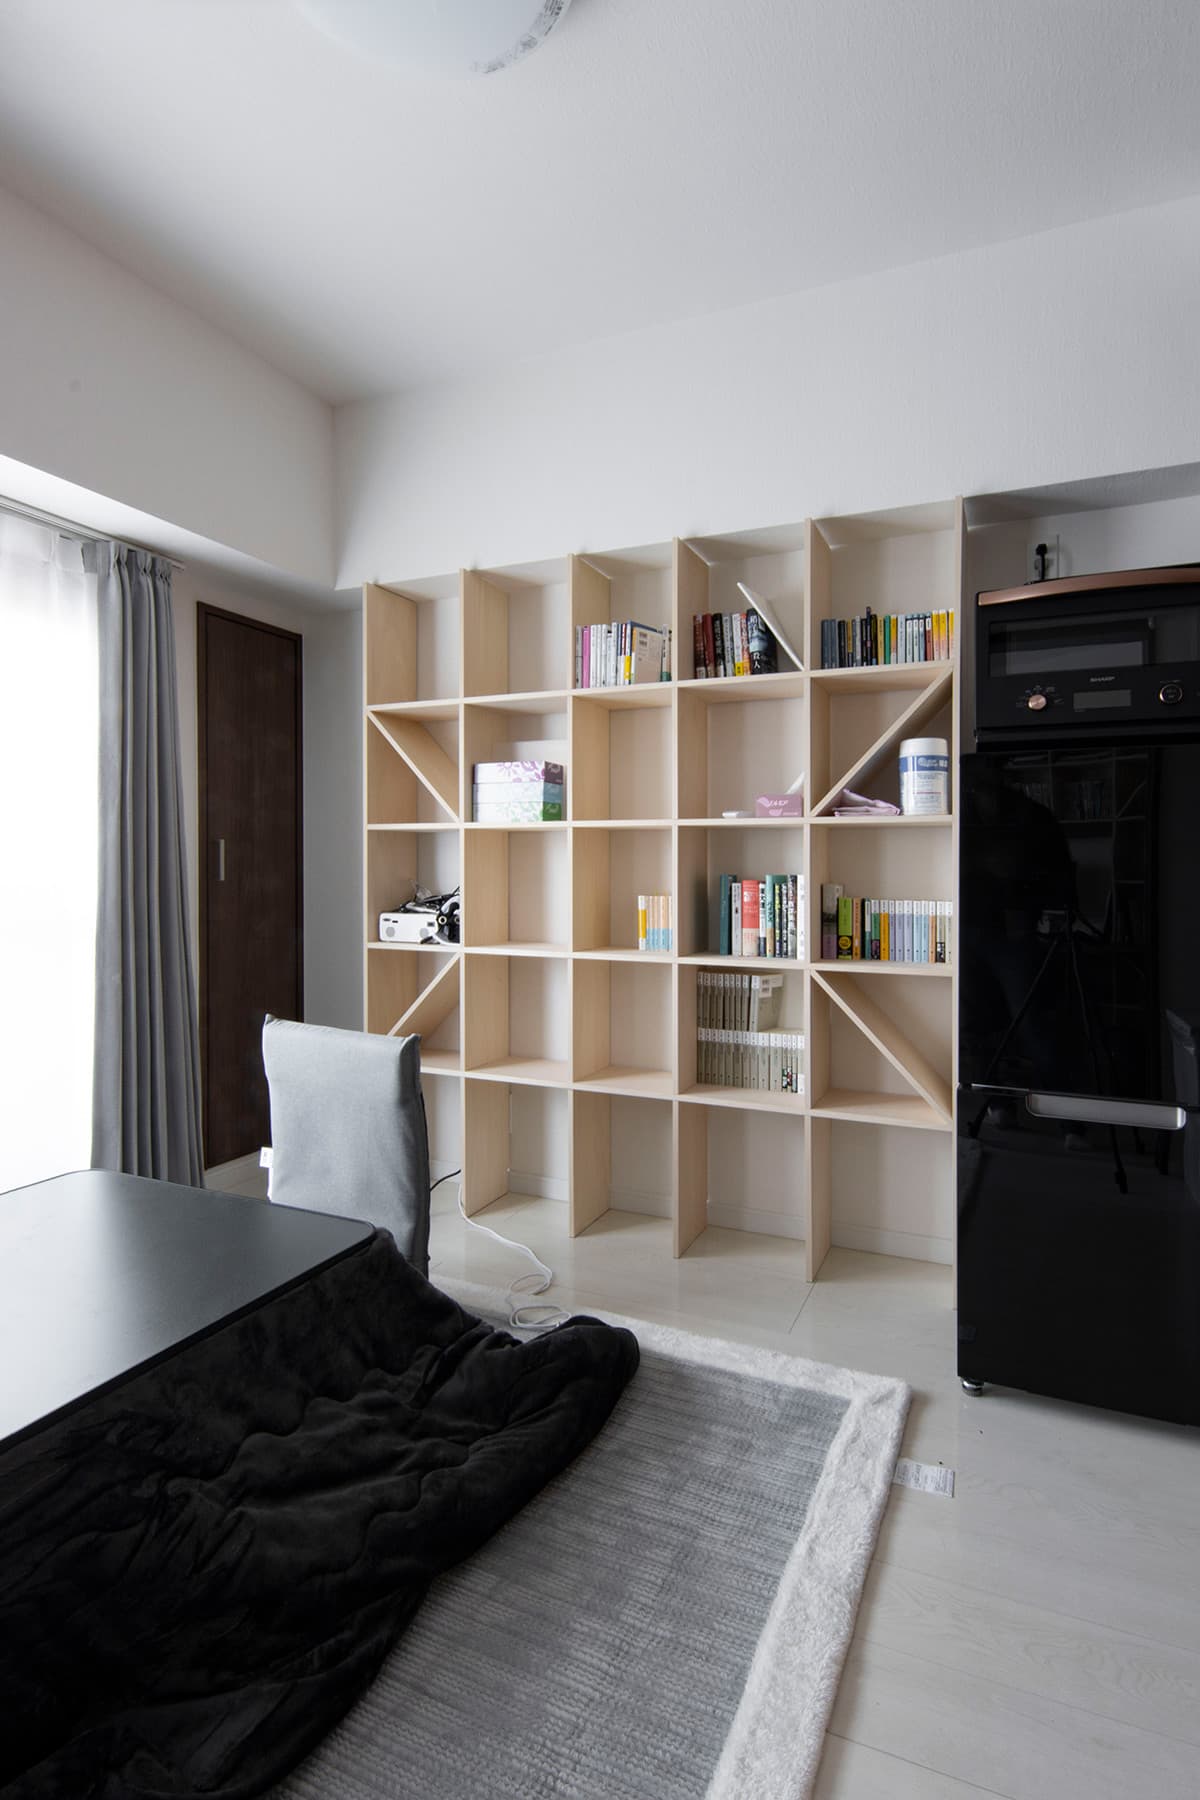 生活空間と学習空間を綺麗に使い分ける | 壁一面の本棚 奥行250 / Shelf | マルゲリータ使用事例